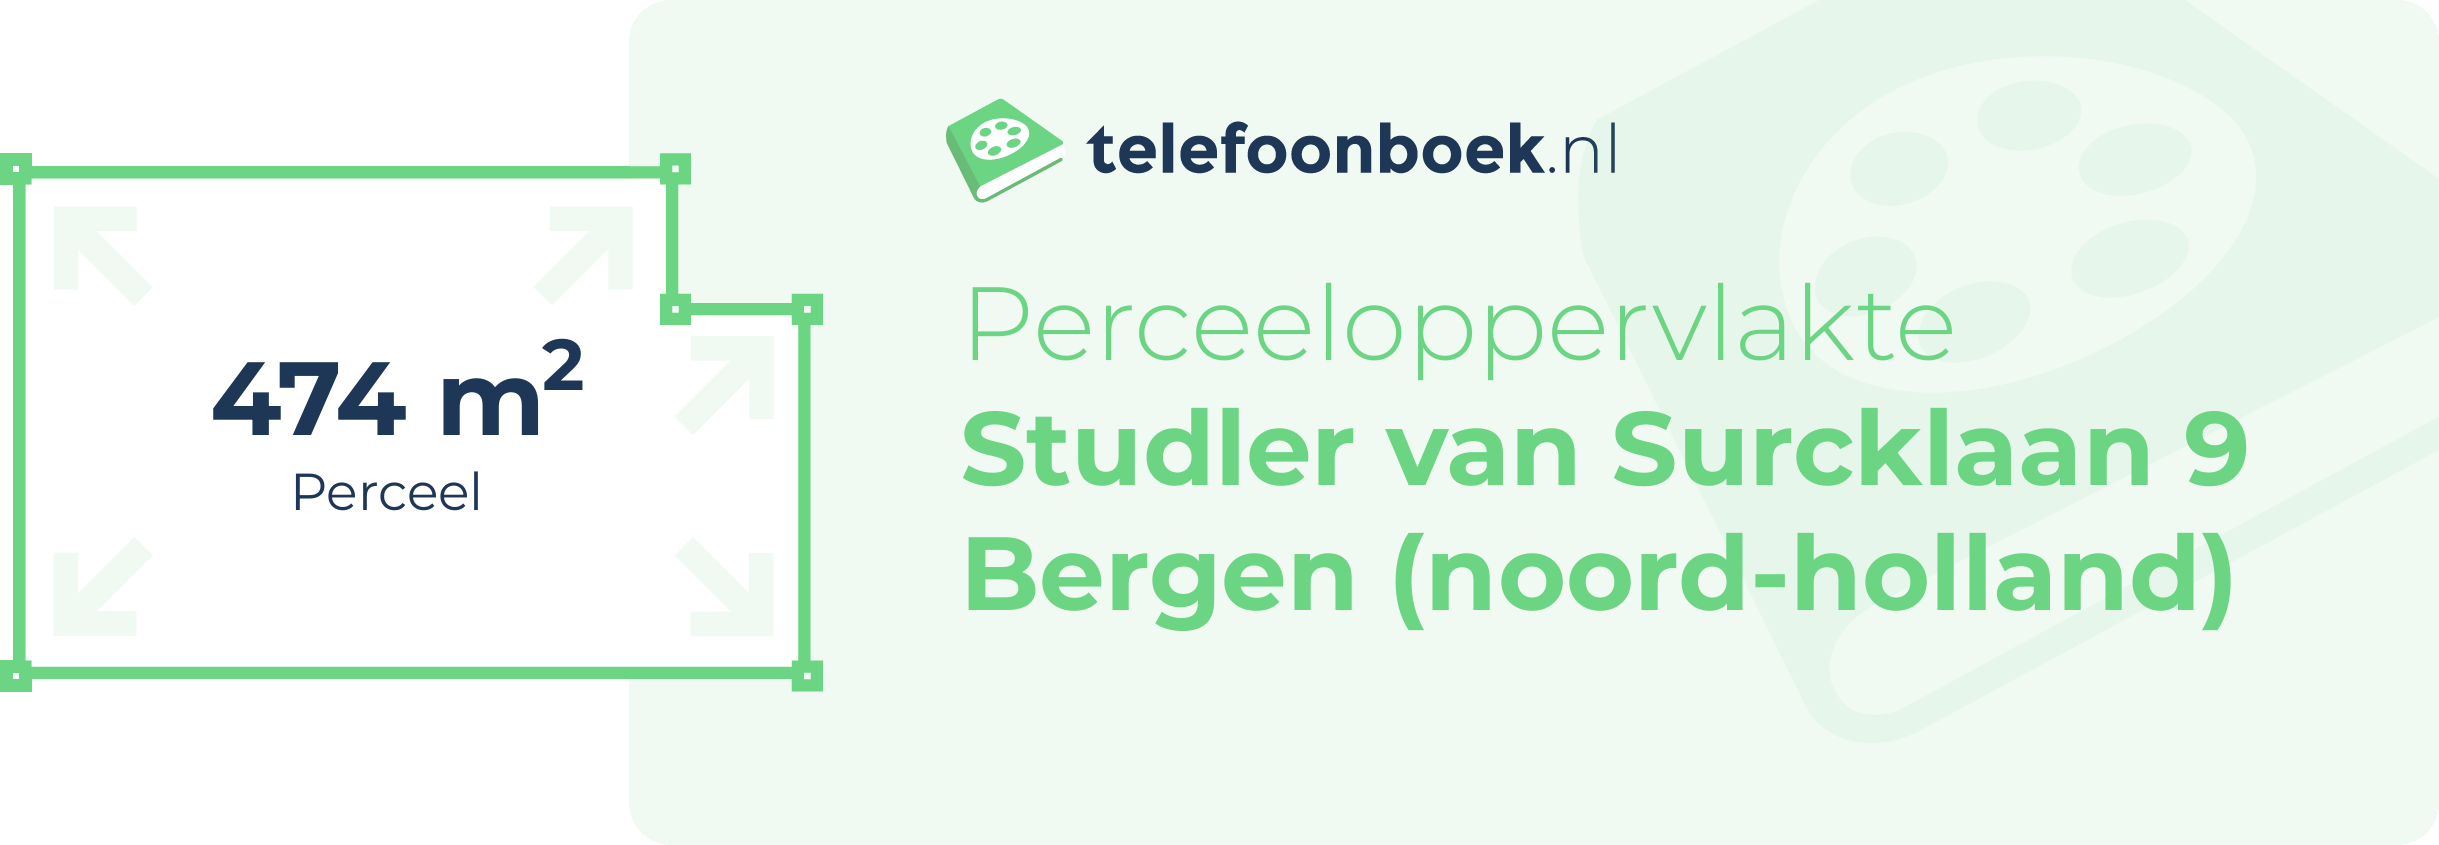 Perceeloppervlakte Studler Van Surcklaan 9 Bergen (Noord-Holland)